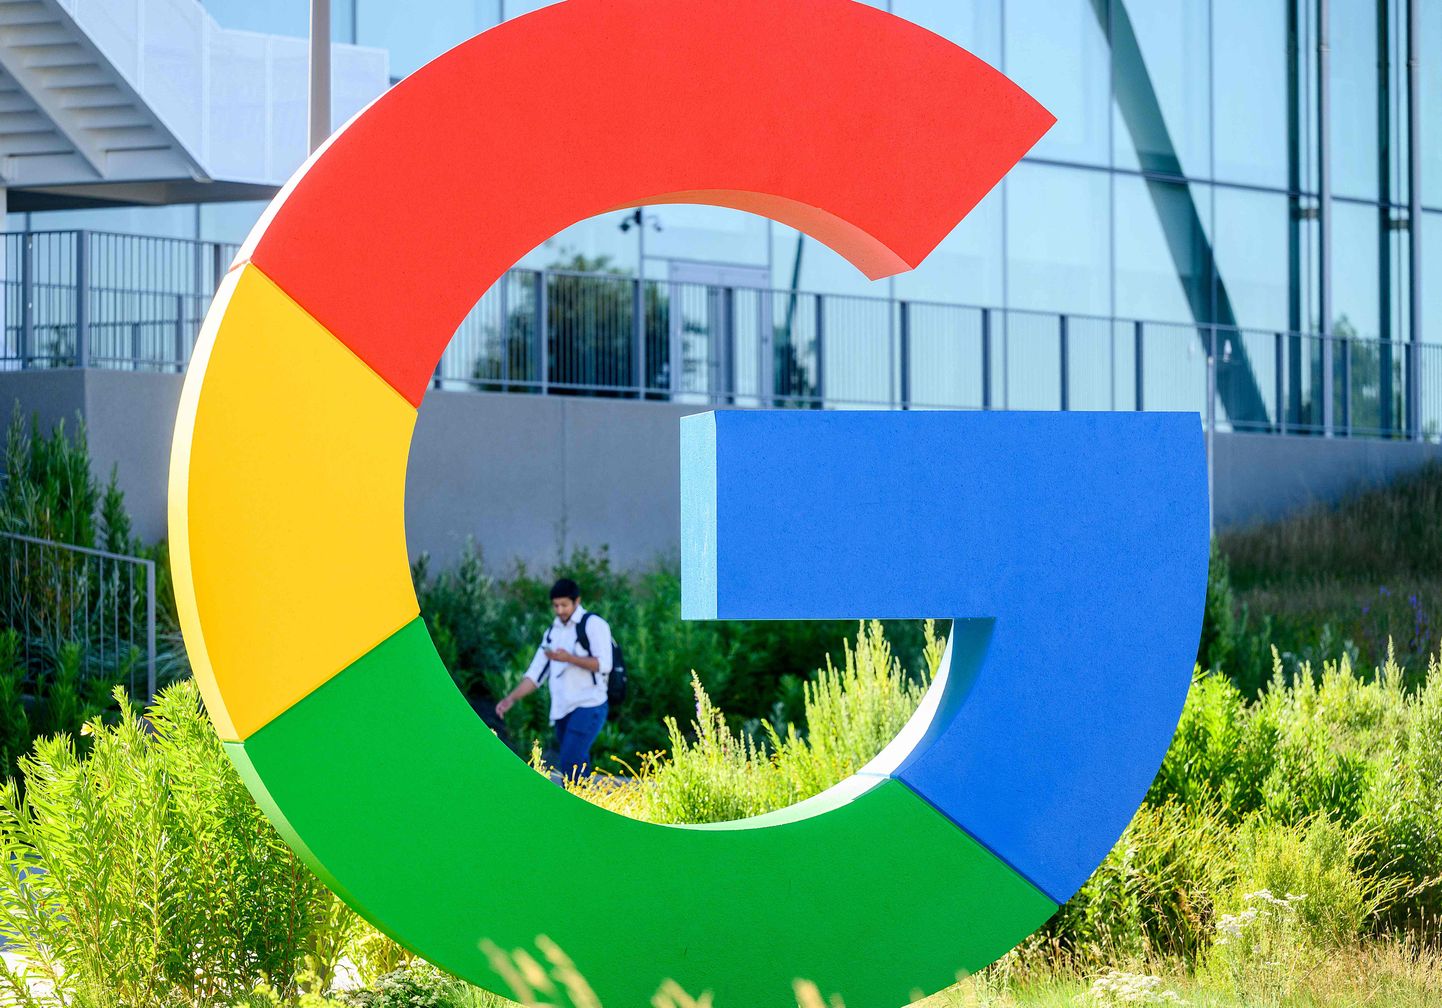 Google on üks viimastest USA tehnoloogiafirmadest, kes pole veel Venemaa turult lahkunud ja saab sealsetelt ametivõimudelt korduvalt trahve karmide tsensuurireeglite rikkumise eest.